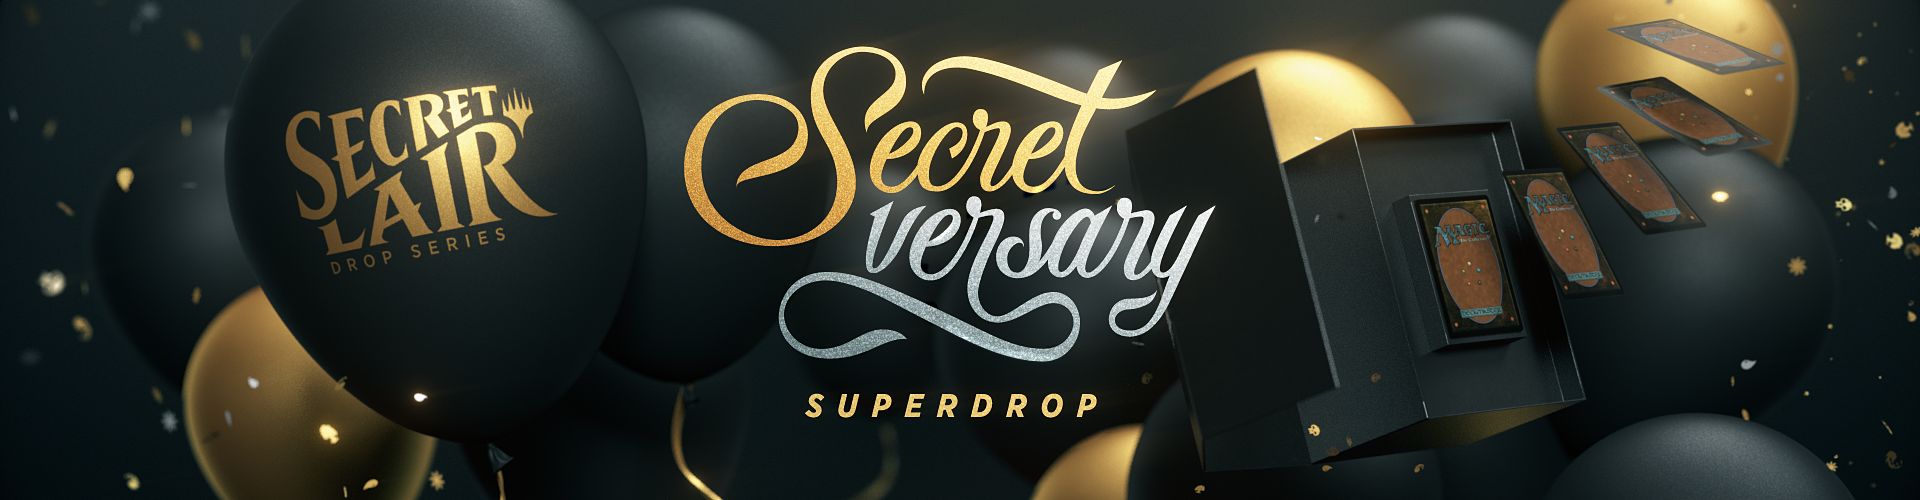 Magic lancia il Secret Lair dal nome Secretversary 2020 thumbnail